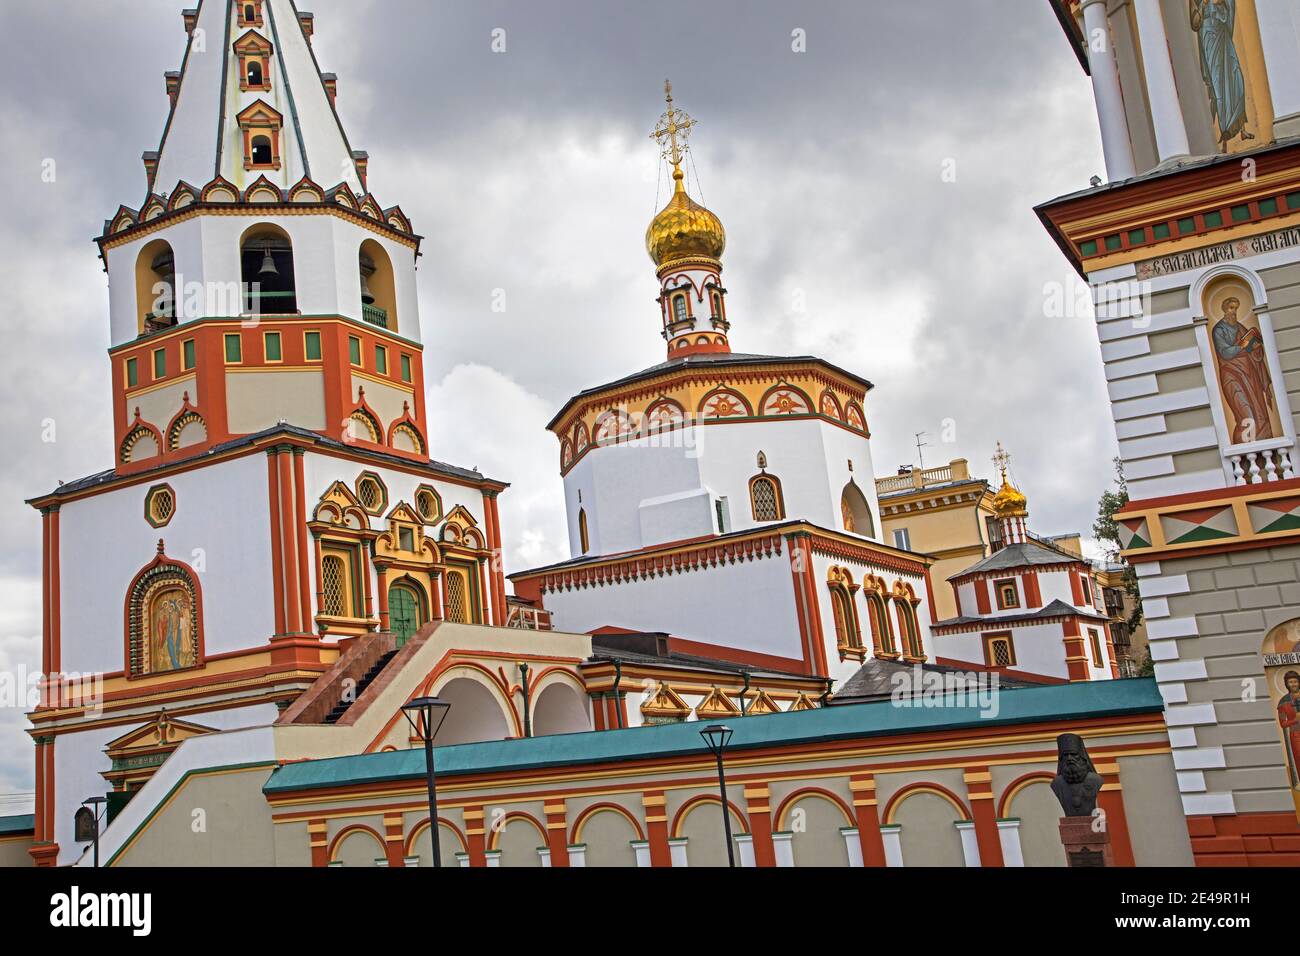 Cathédrale Epiphanie du XVIIIe siècle, Église orthodoxe russe dans la ville d'Irkoutsk, Sibérie méridionale, Russie Banque D'Images